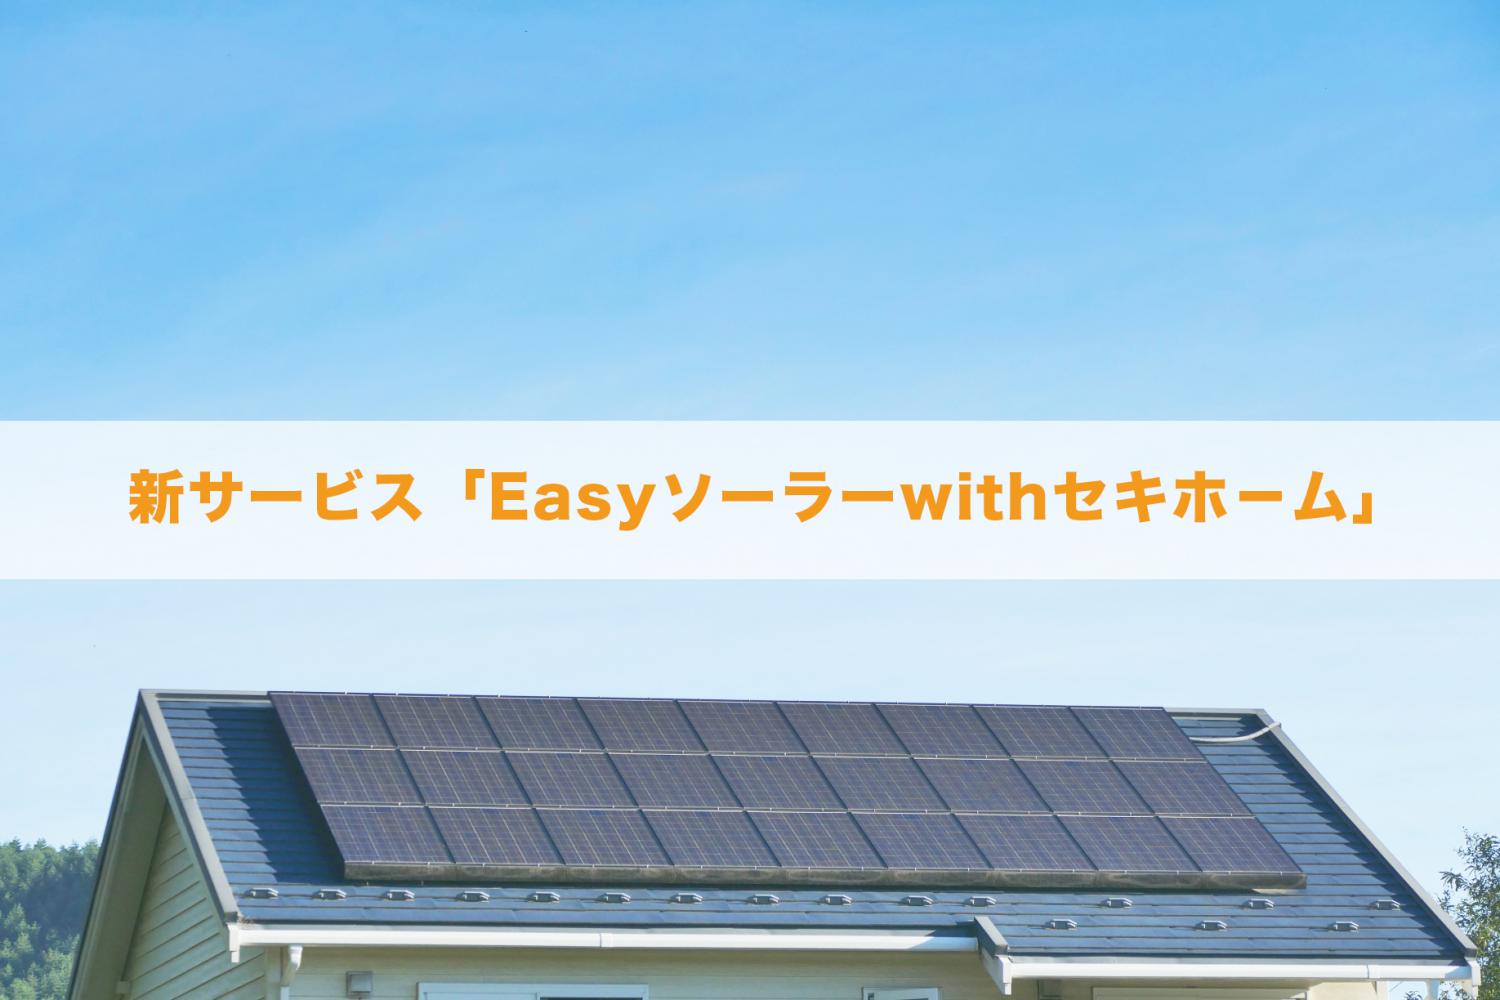 新サービス「Easyソーラー」を徹底解説 | 初期費用0円の太陽光発電設備導入サービス